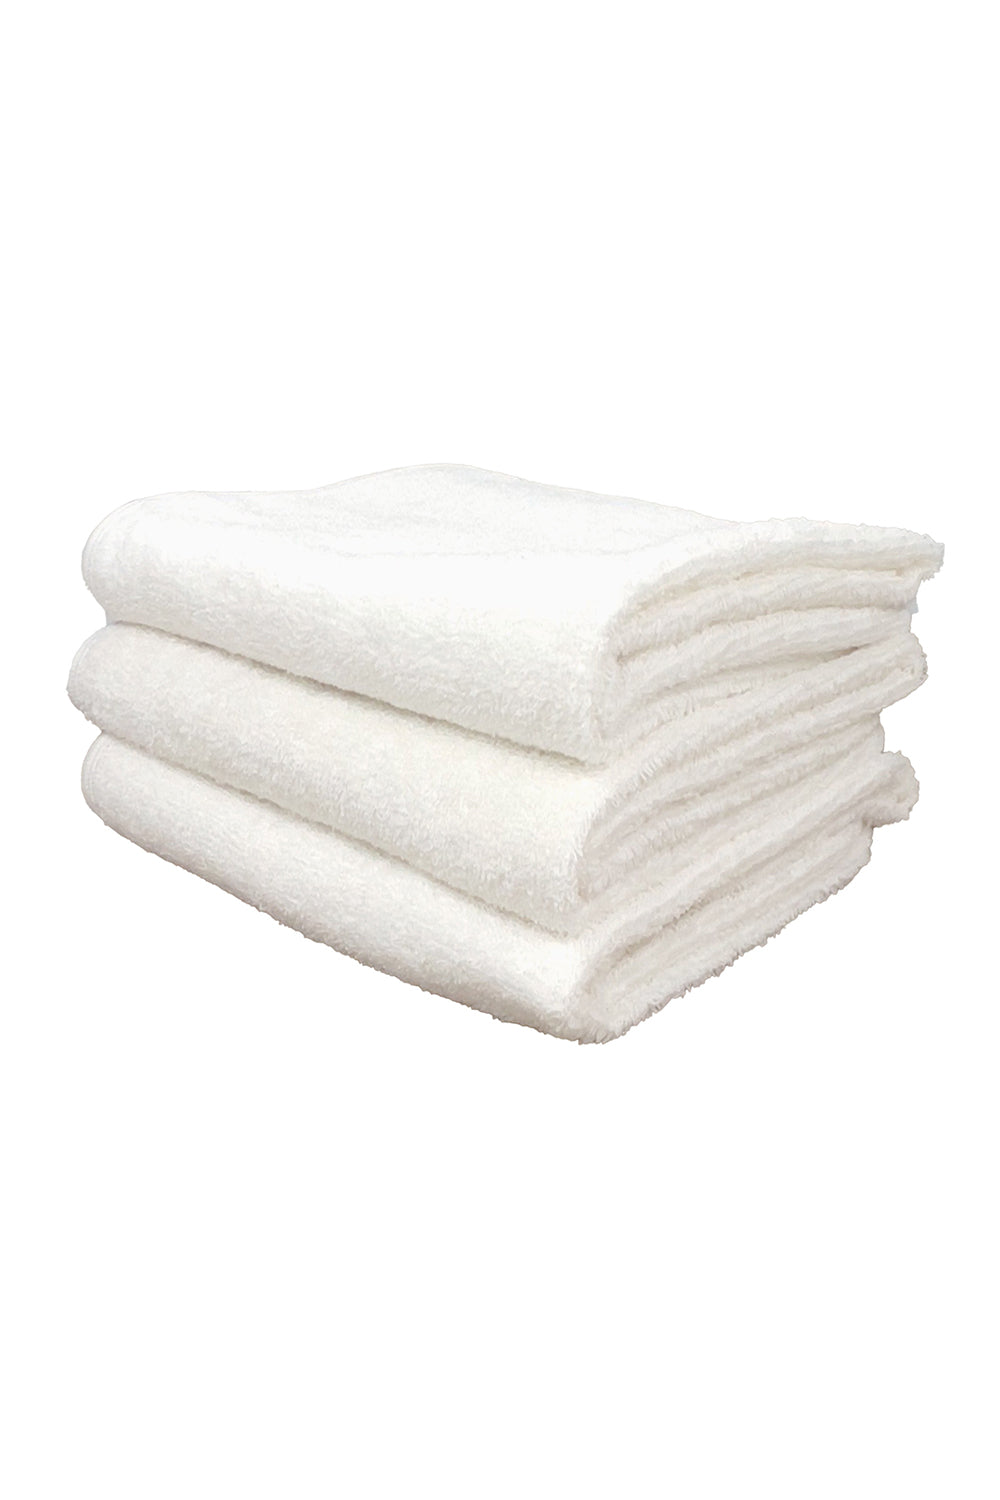 https://jungmaven.com/cdn/shop/files/TowelsStacked-Medium-Washed_White.jpg?v=1691432987&width=1946